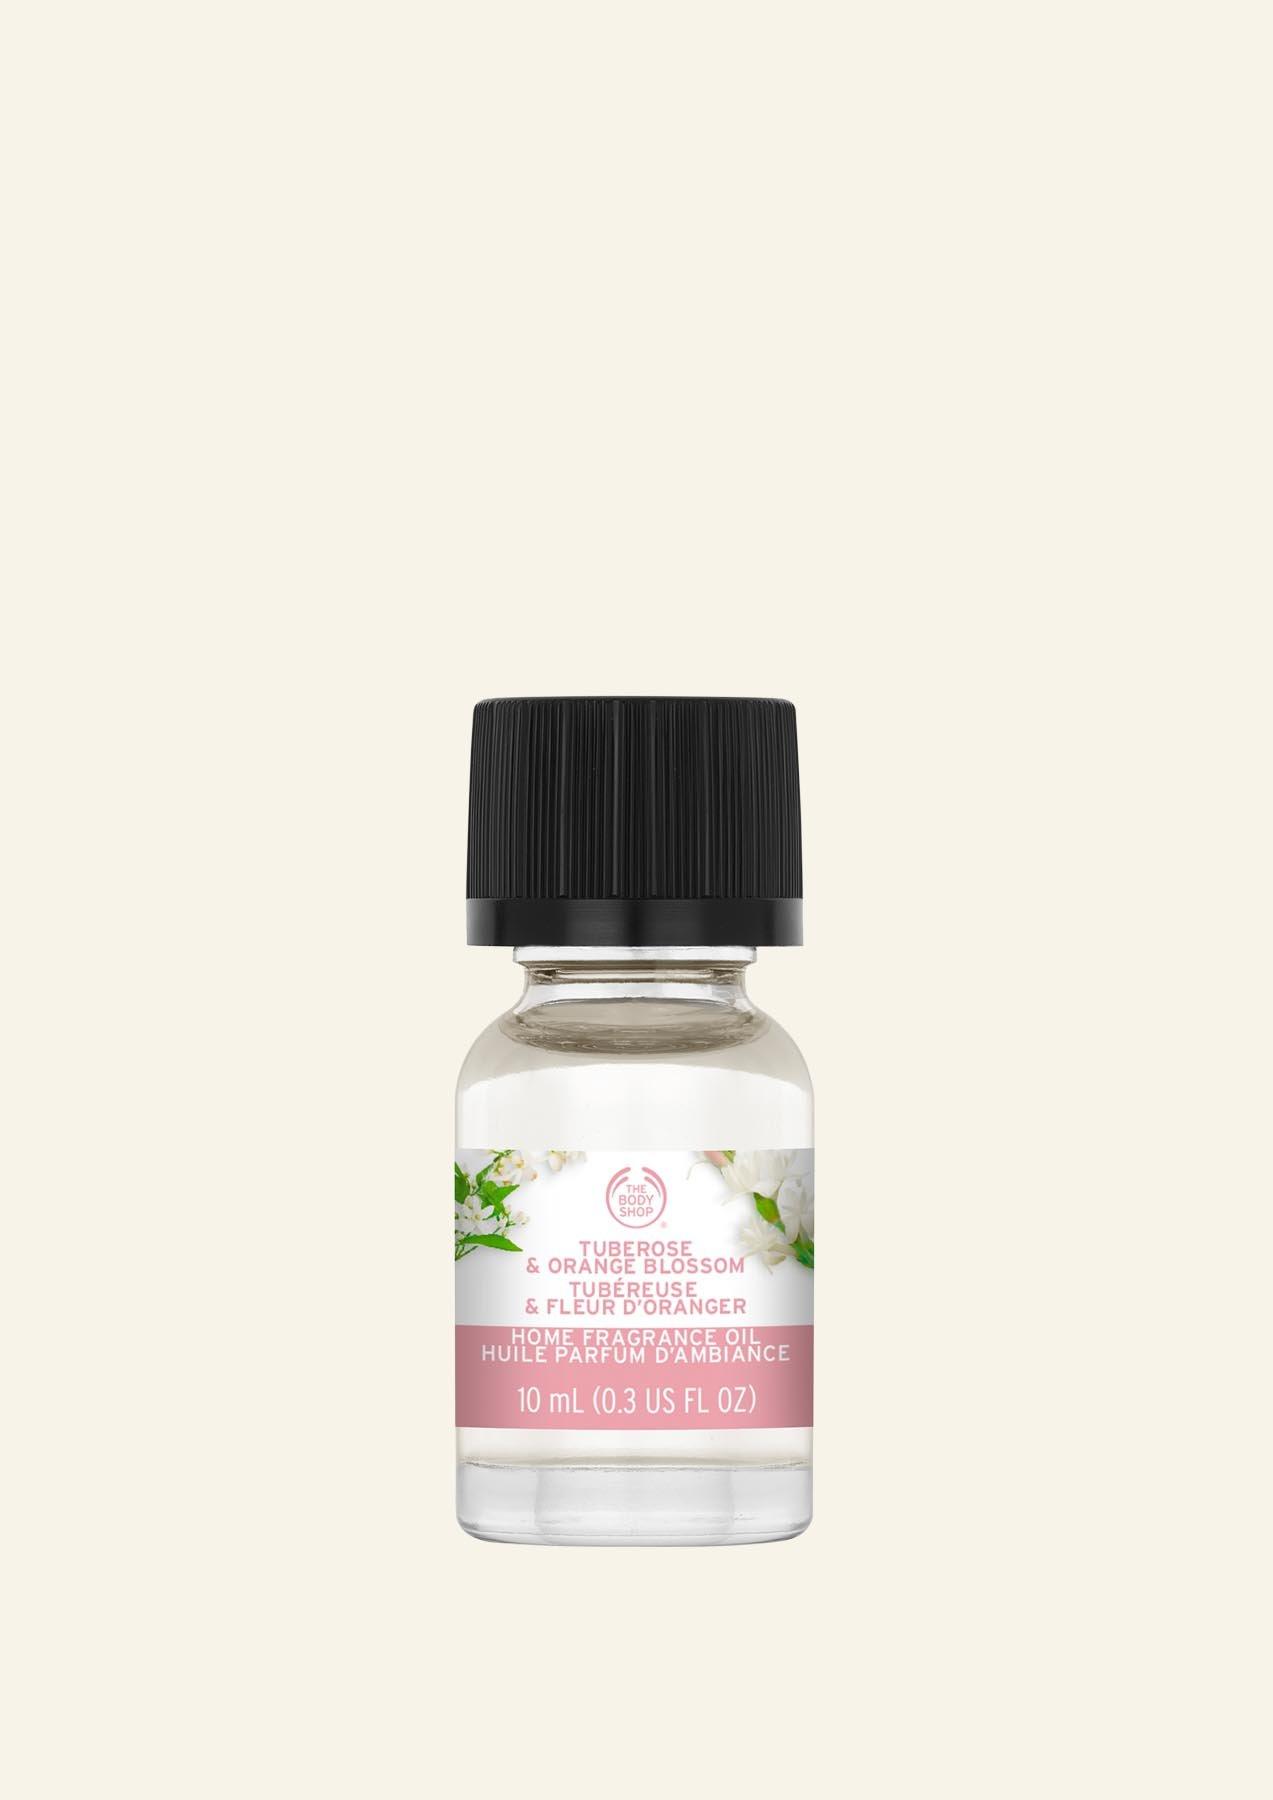 The Body Shop Oil Tuberose & Orange Blossom Home Fragrance Oil 10 ml